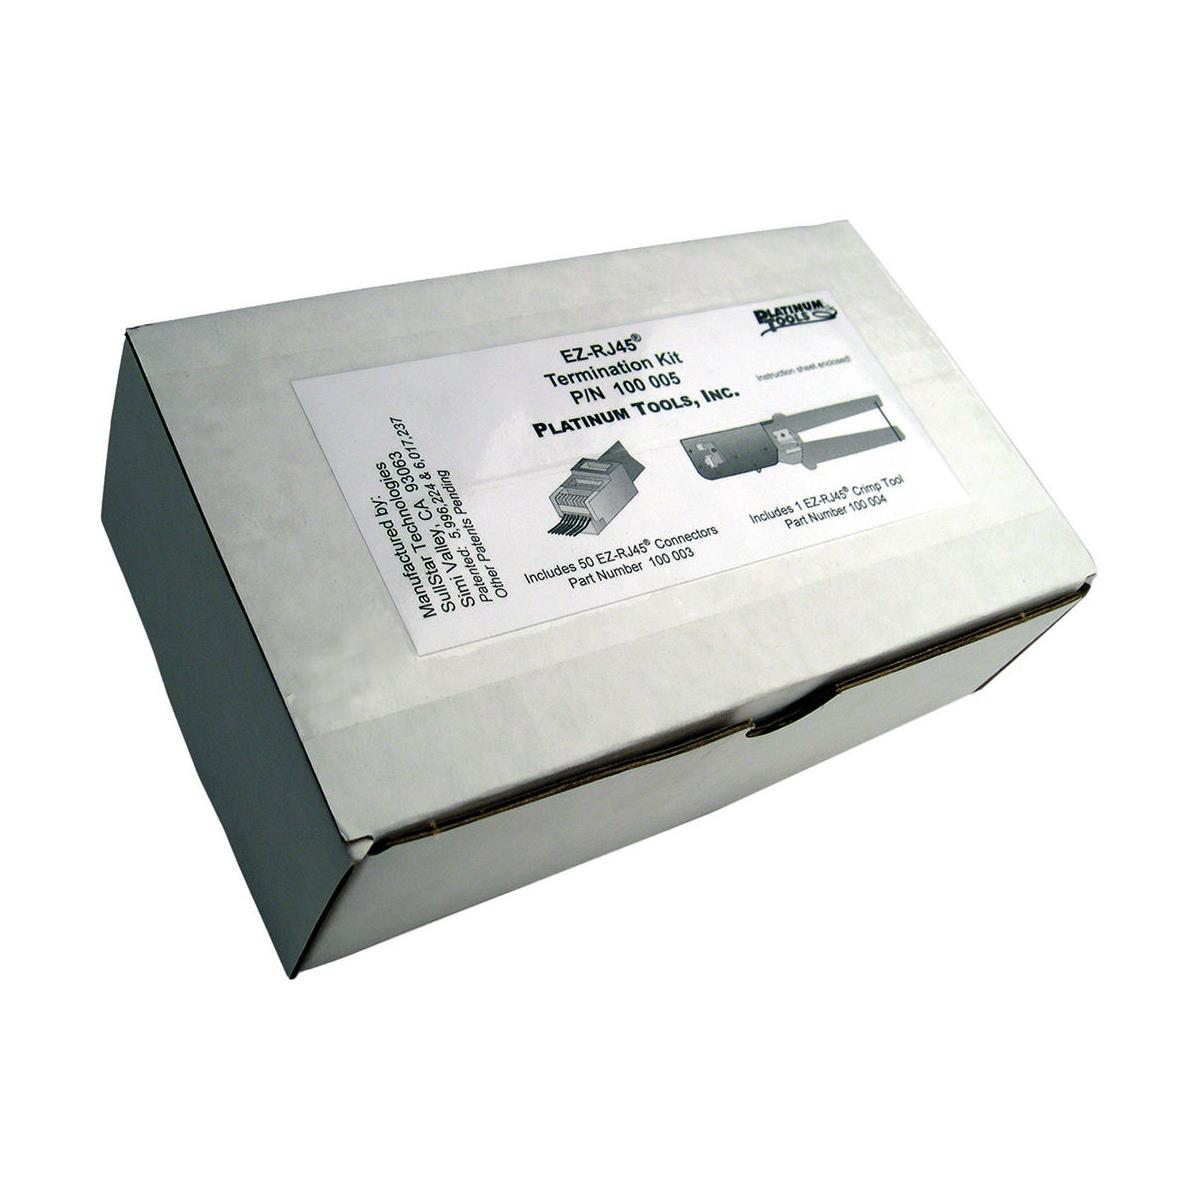 Image of Platinum Tools EZ-RJ45 Convenience Pack